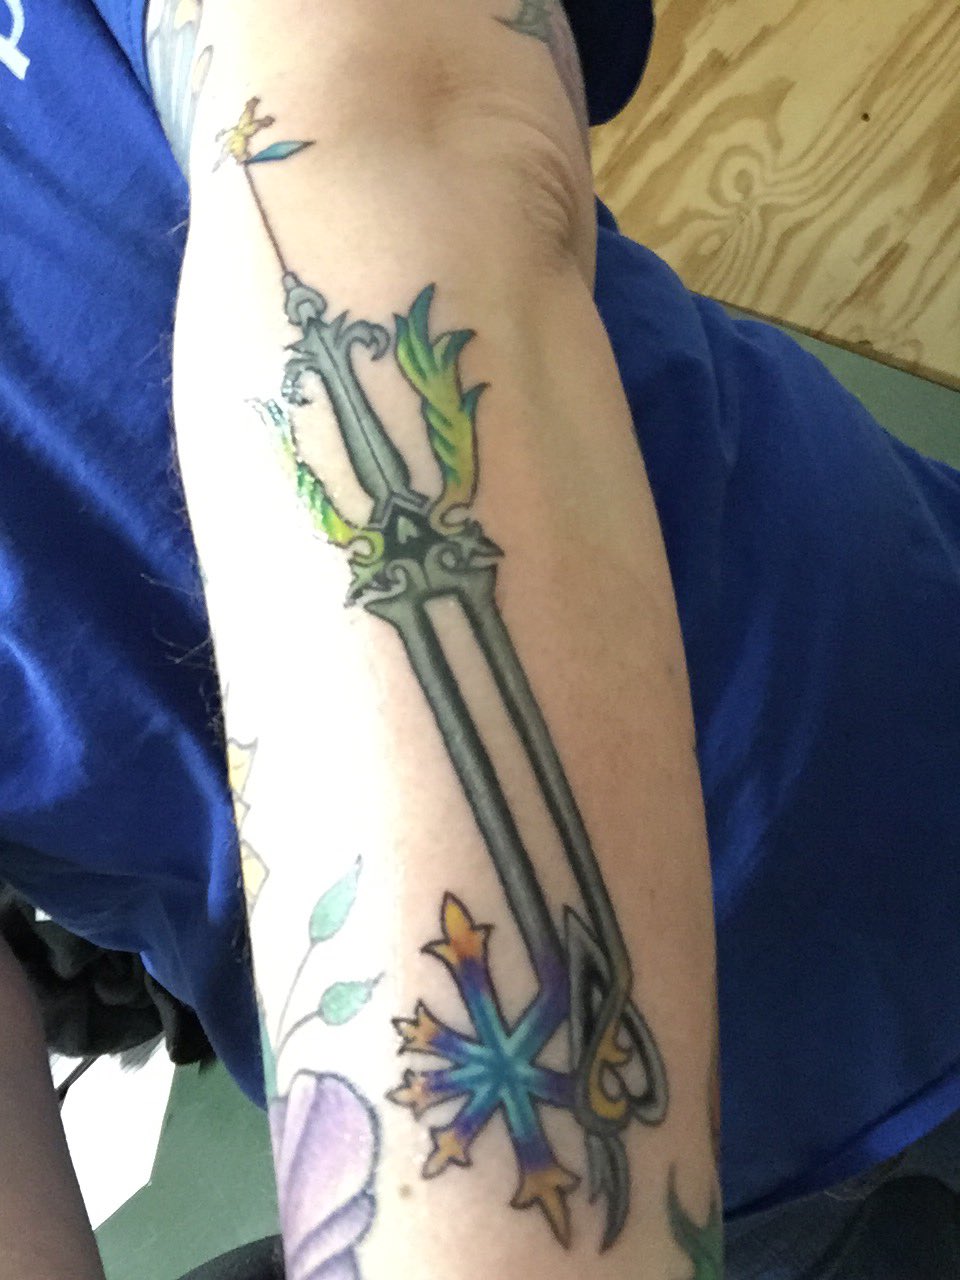 Age Tattoos  Keyblades from Kingdom Hearts agetattoo tattoo